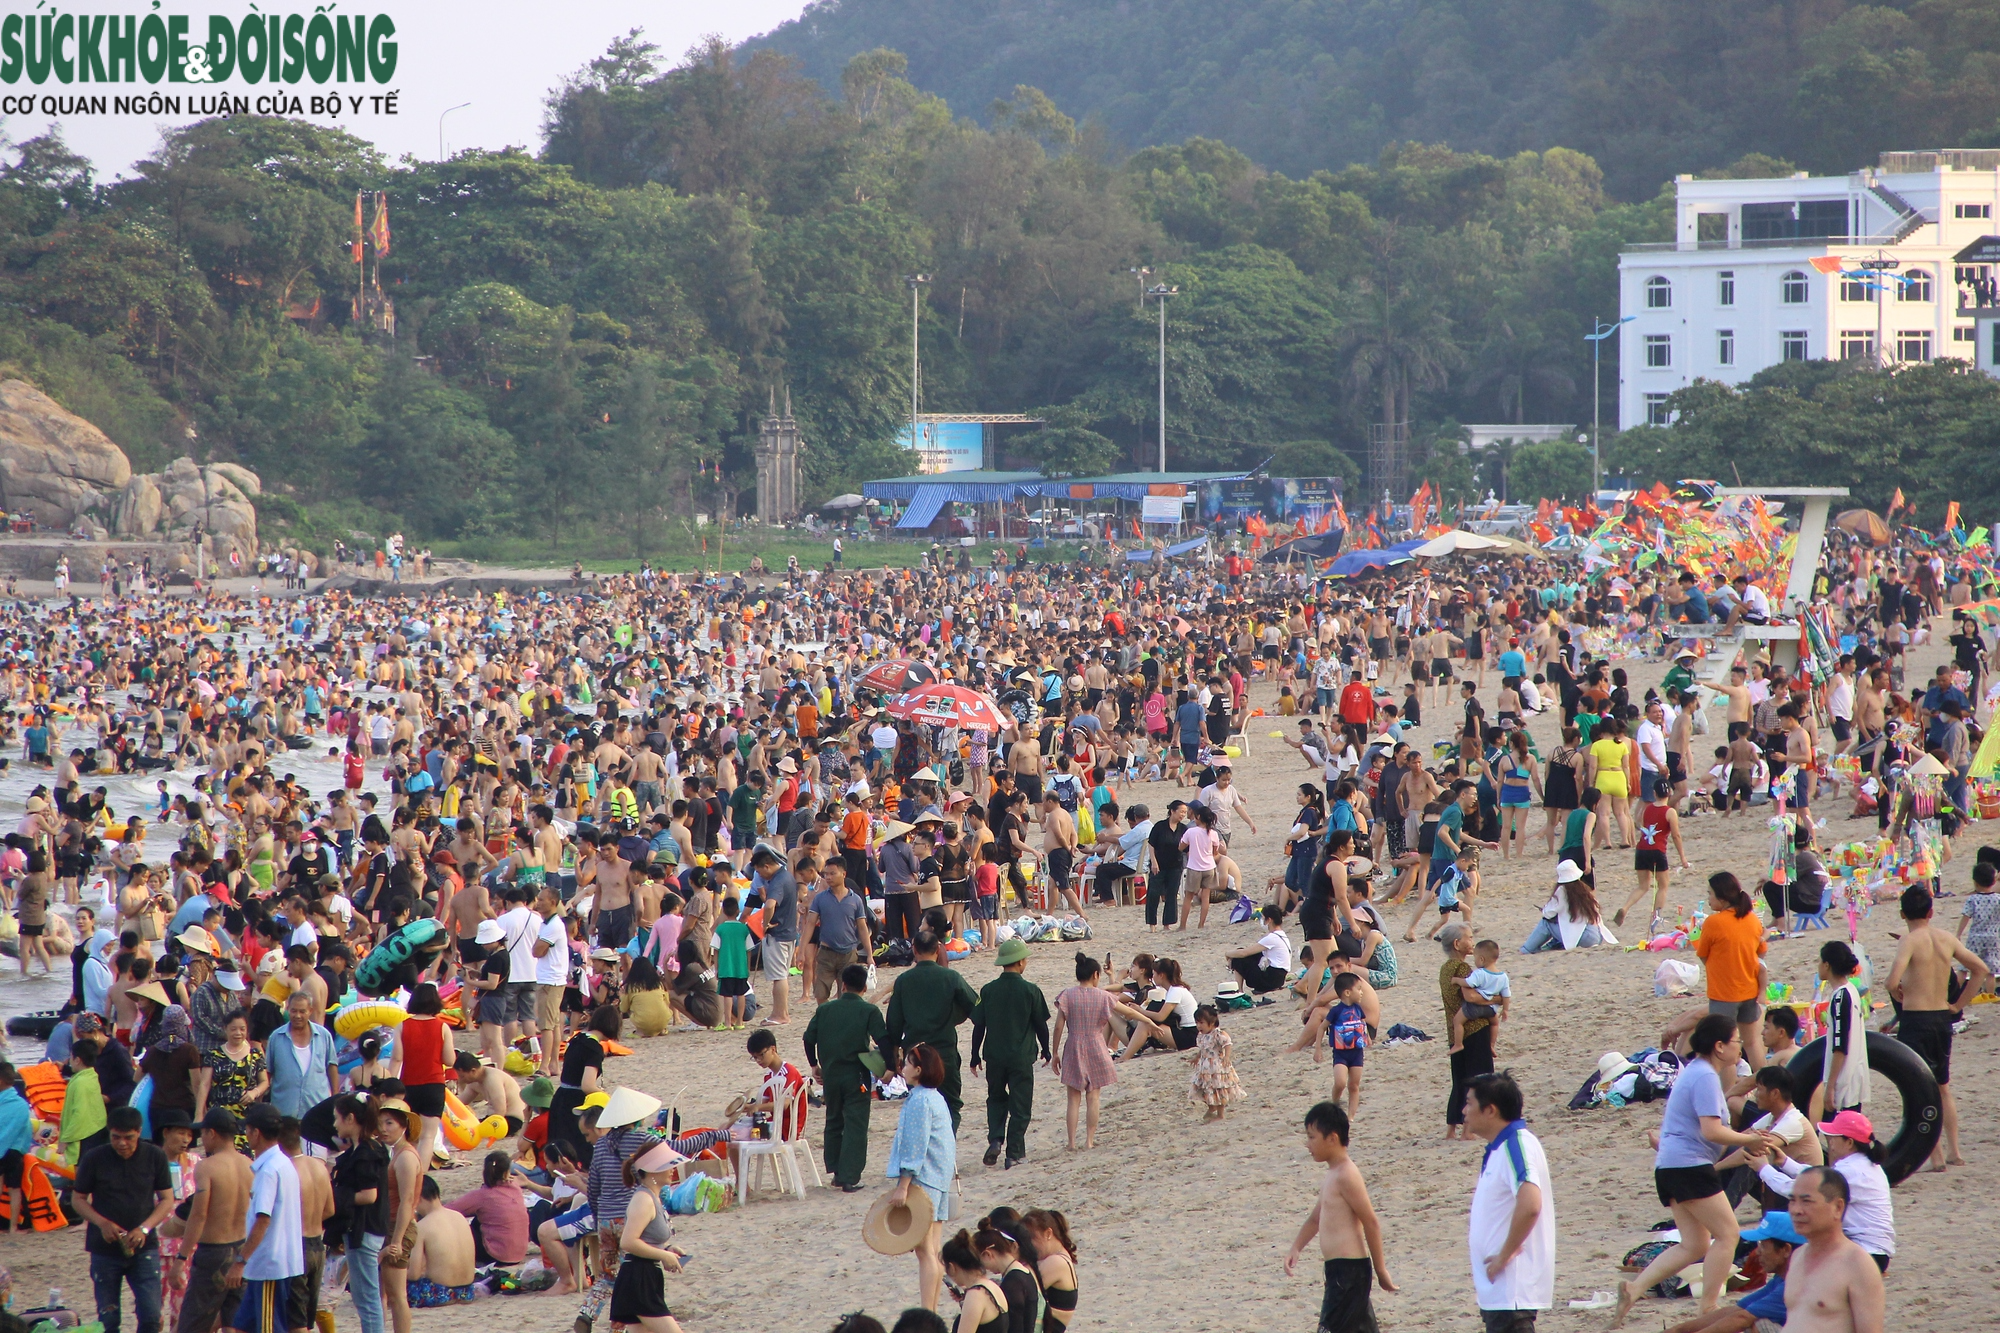 Bãi biển Sầm Sơn chật kín người dịp cuối tuần - Ảnh 15.